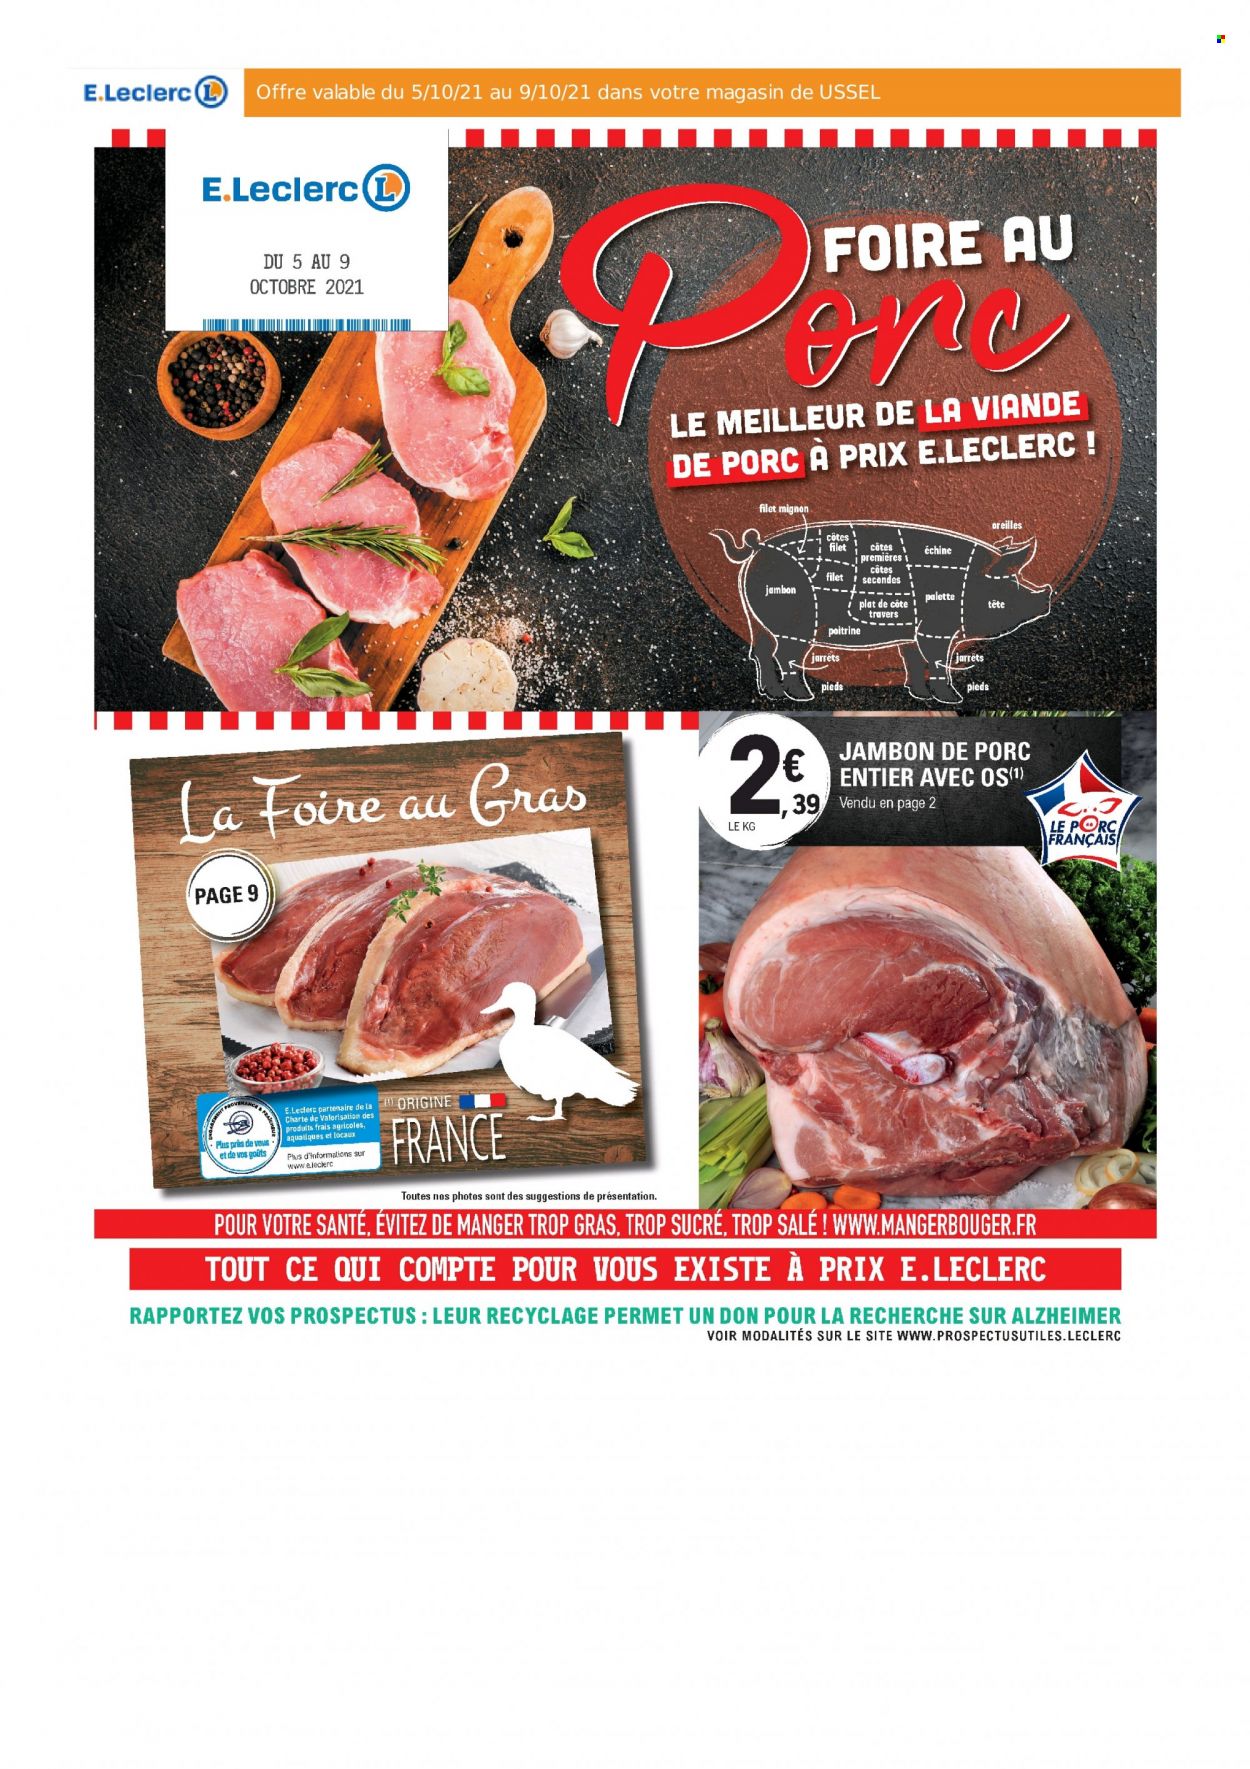 thumbnail - Catalogue E.Leclerc - Produits soldés - filet mignon, viande de porc, jambon, Palette. Page 1.